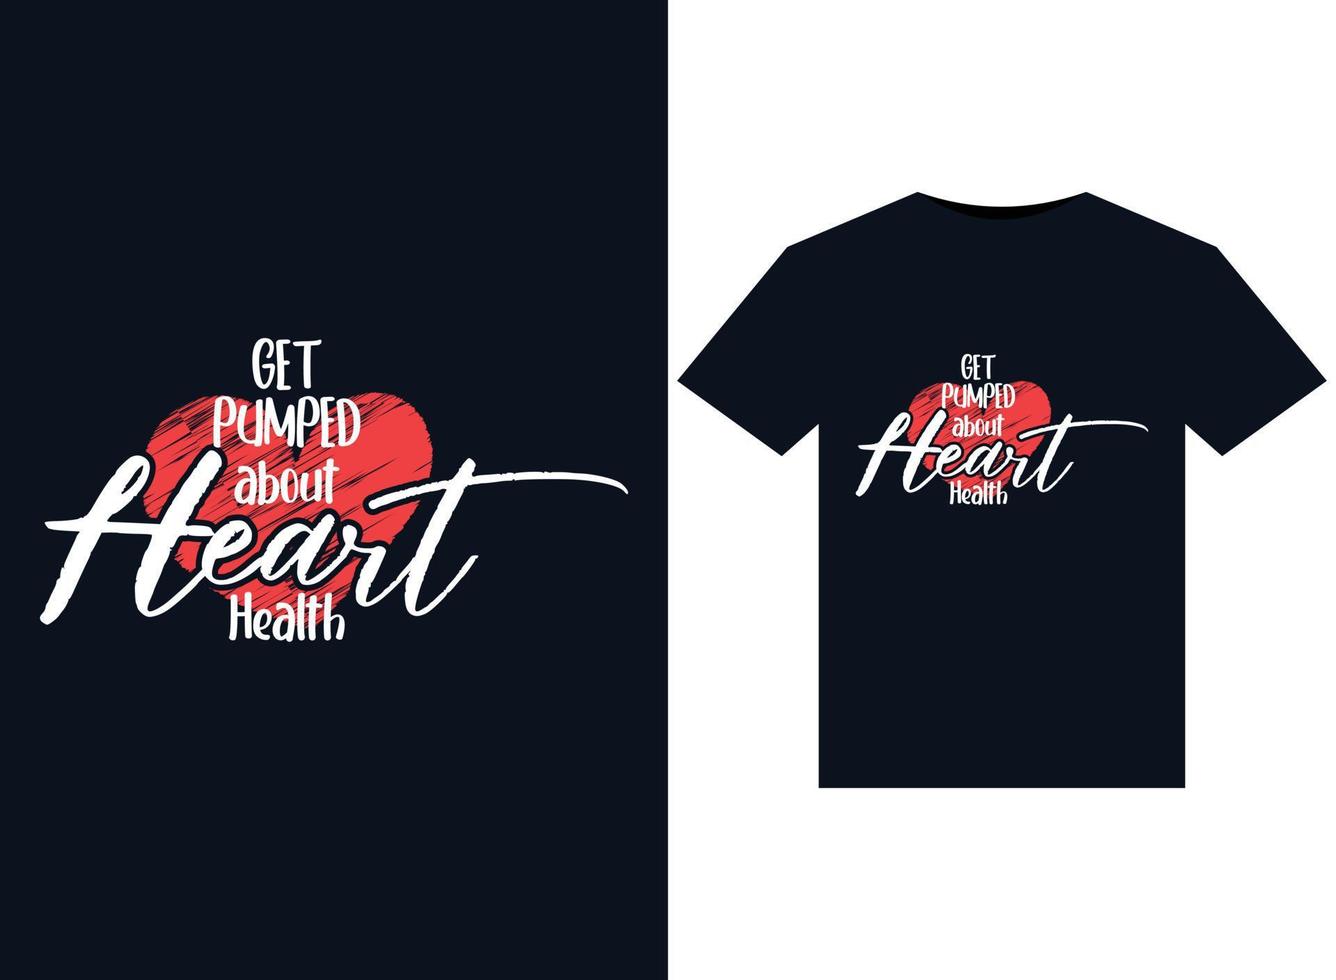 krijgen gemotiveerd over hart Gezondheid illustraties voor drukklare t-shirts ontwerp vector